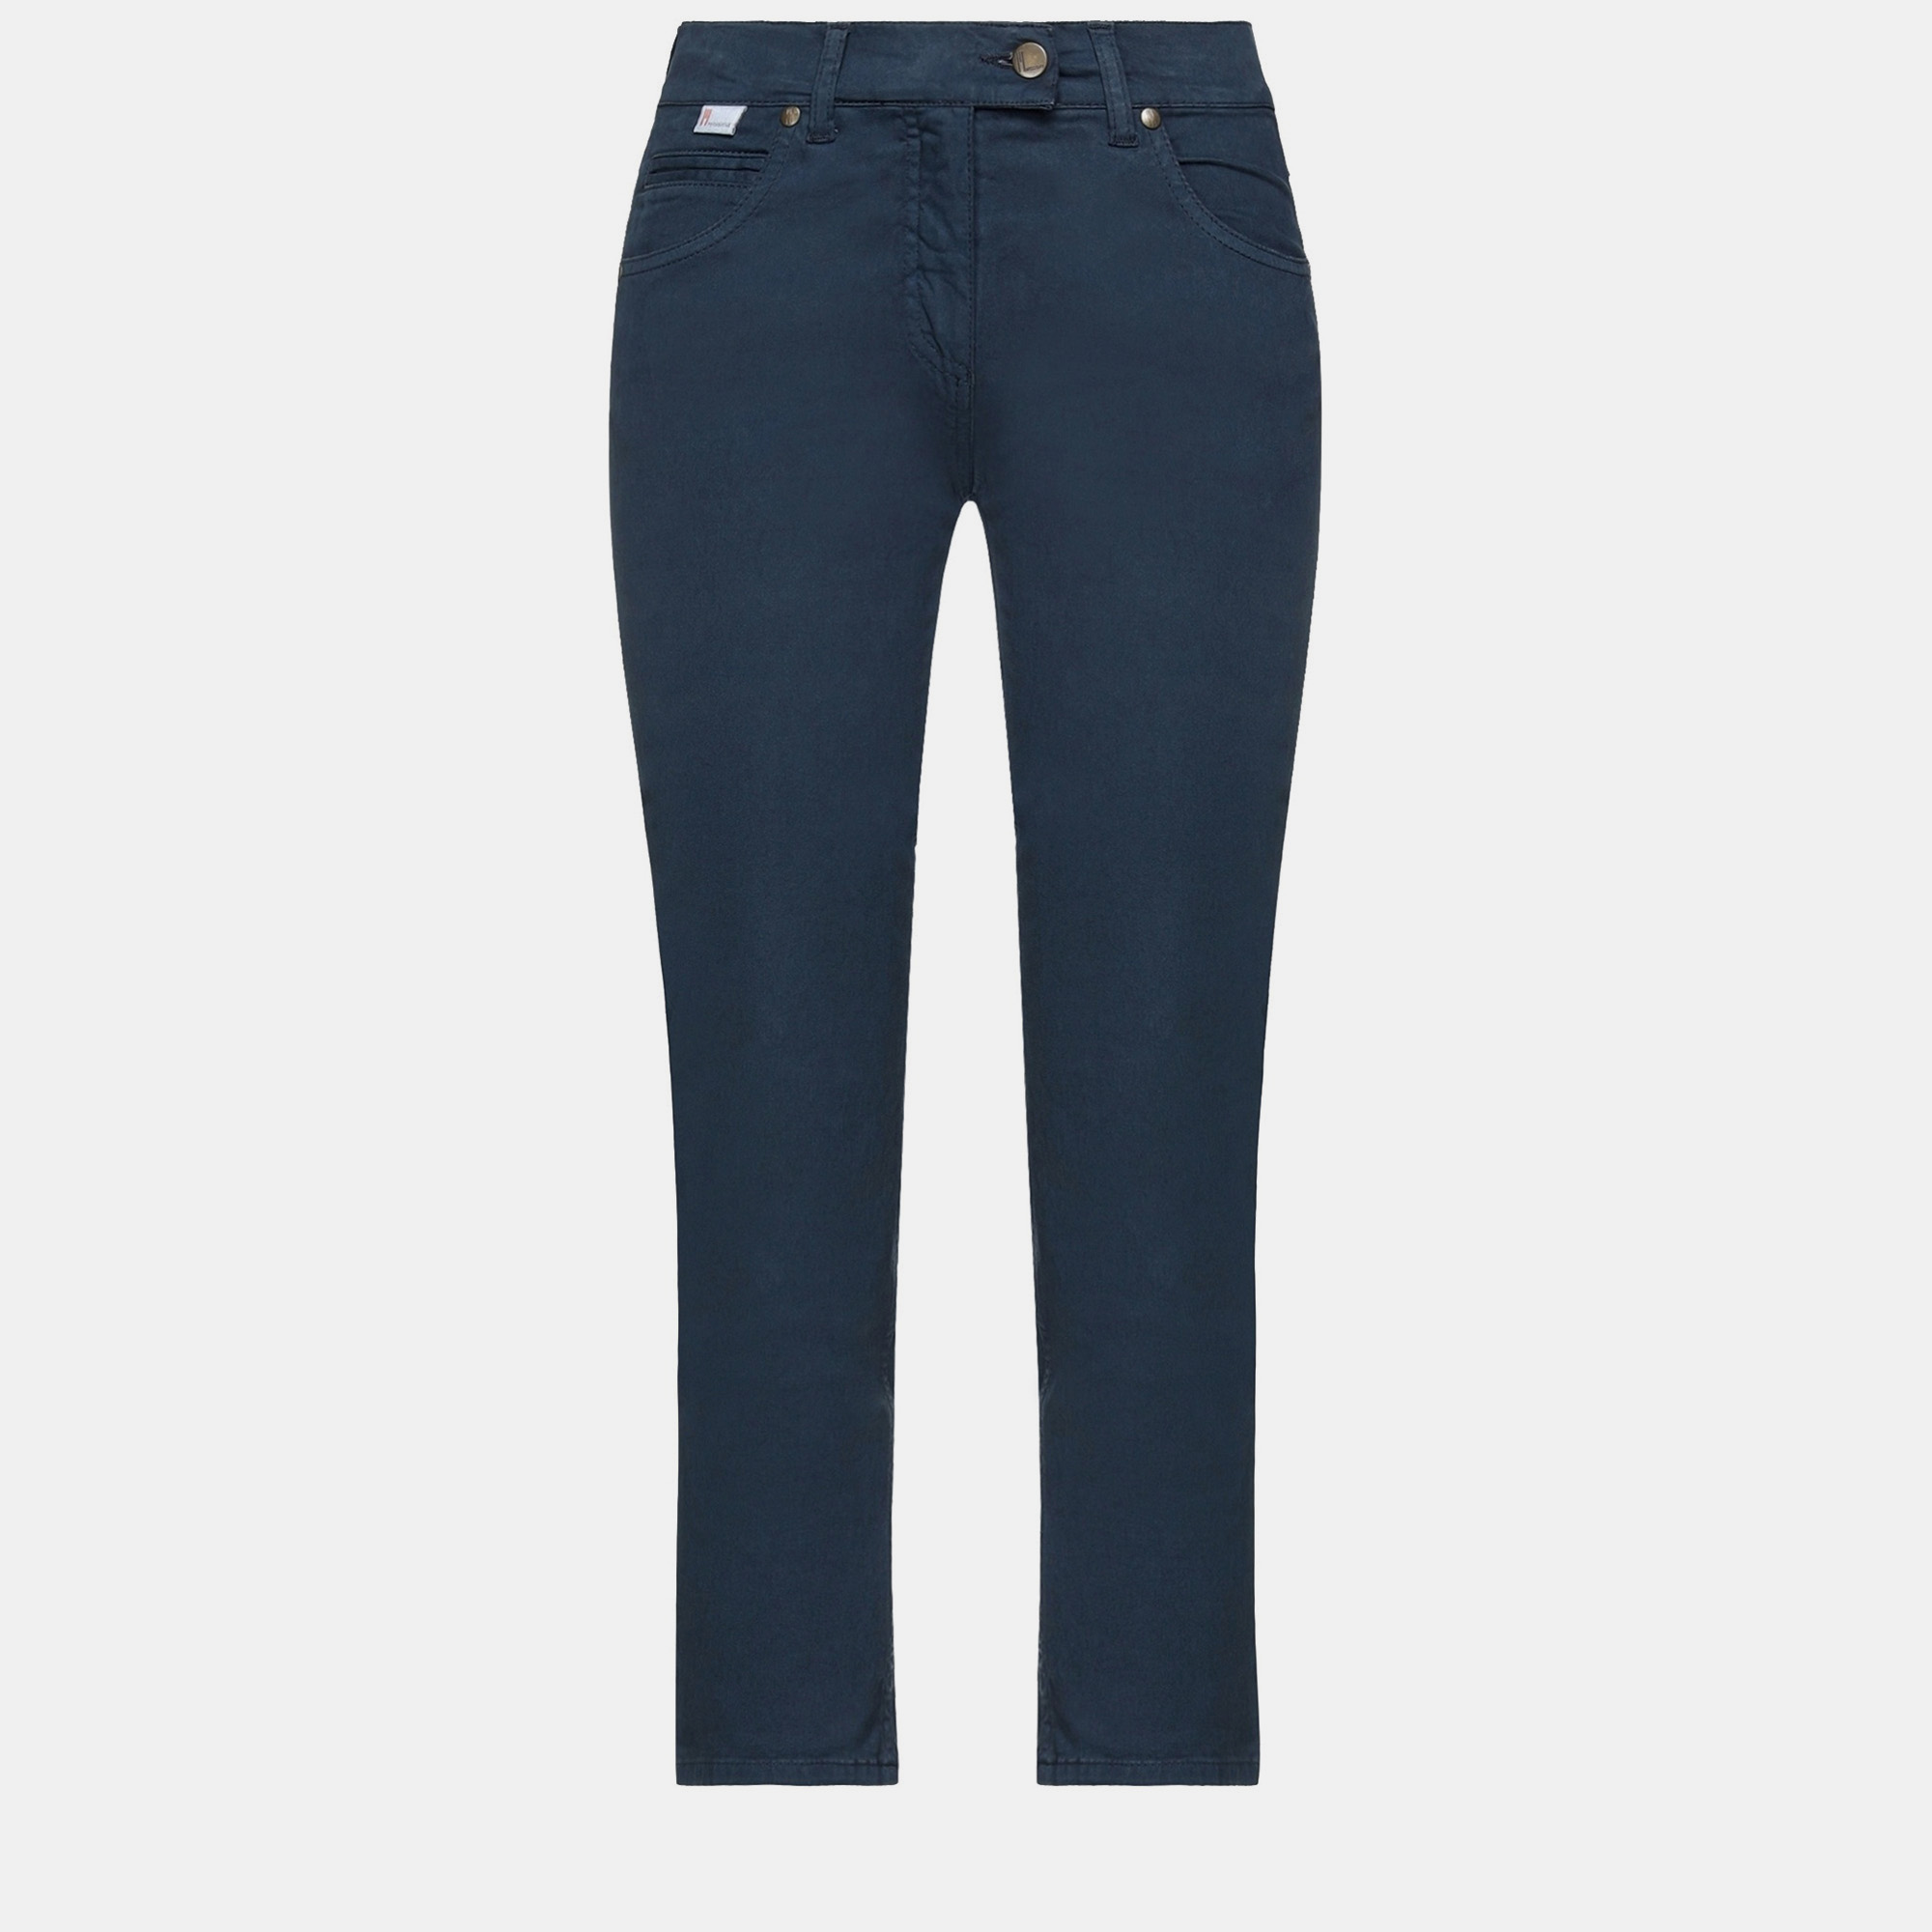 M missoni dark blue cotton tapered pants m (it 42)